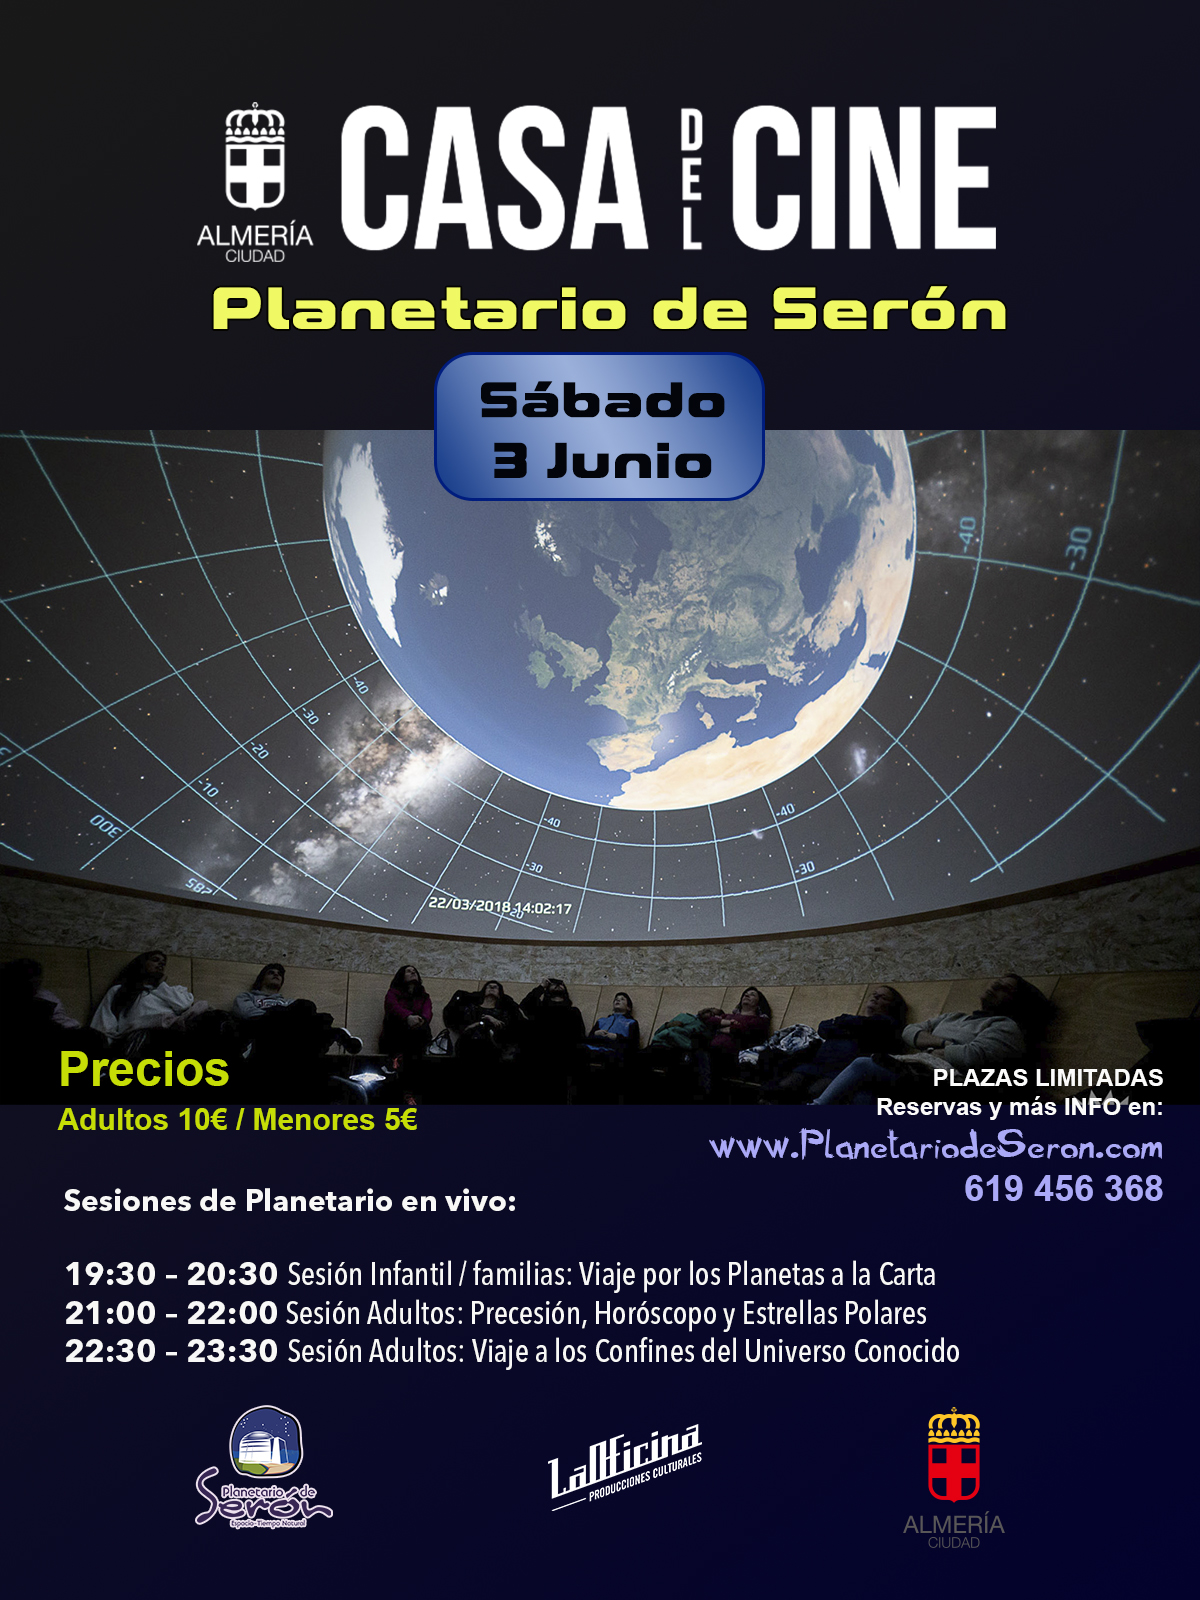 Planetario de Seron - Casa del Cine Almeria